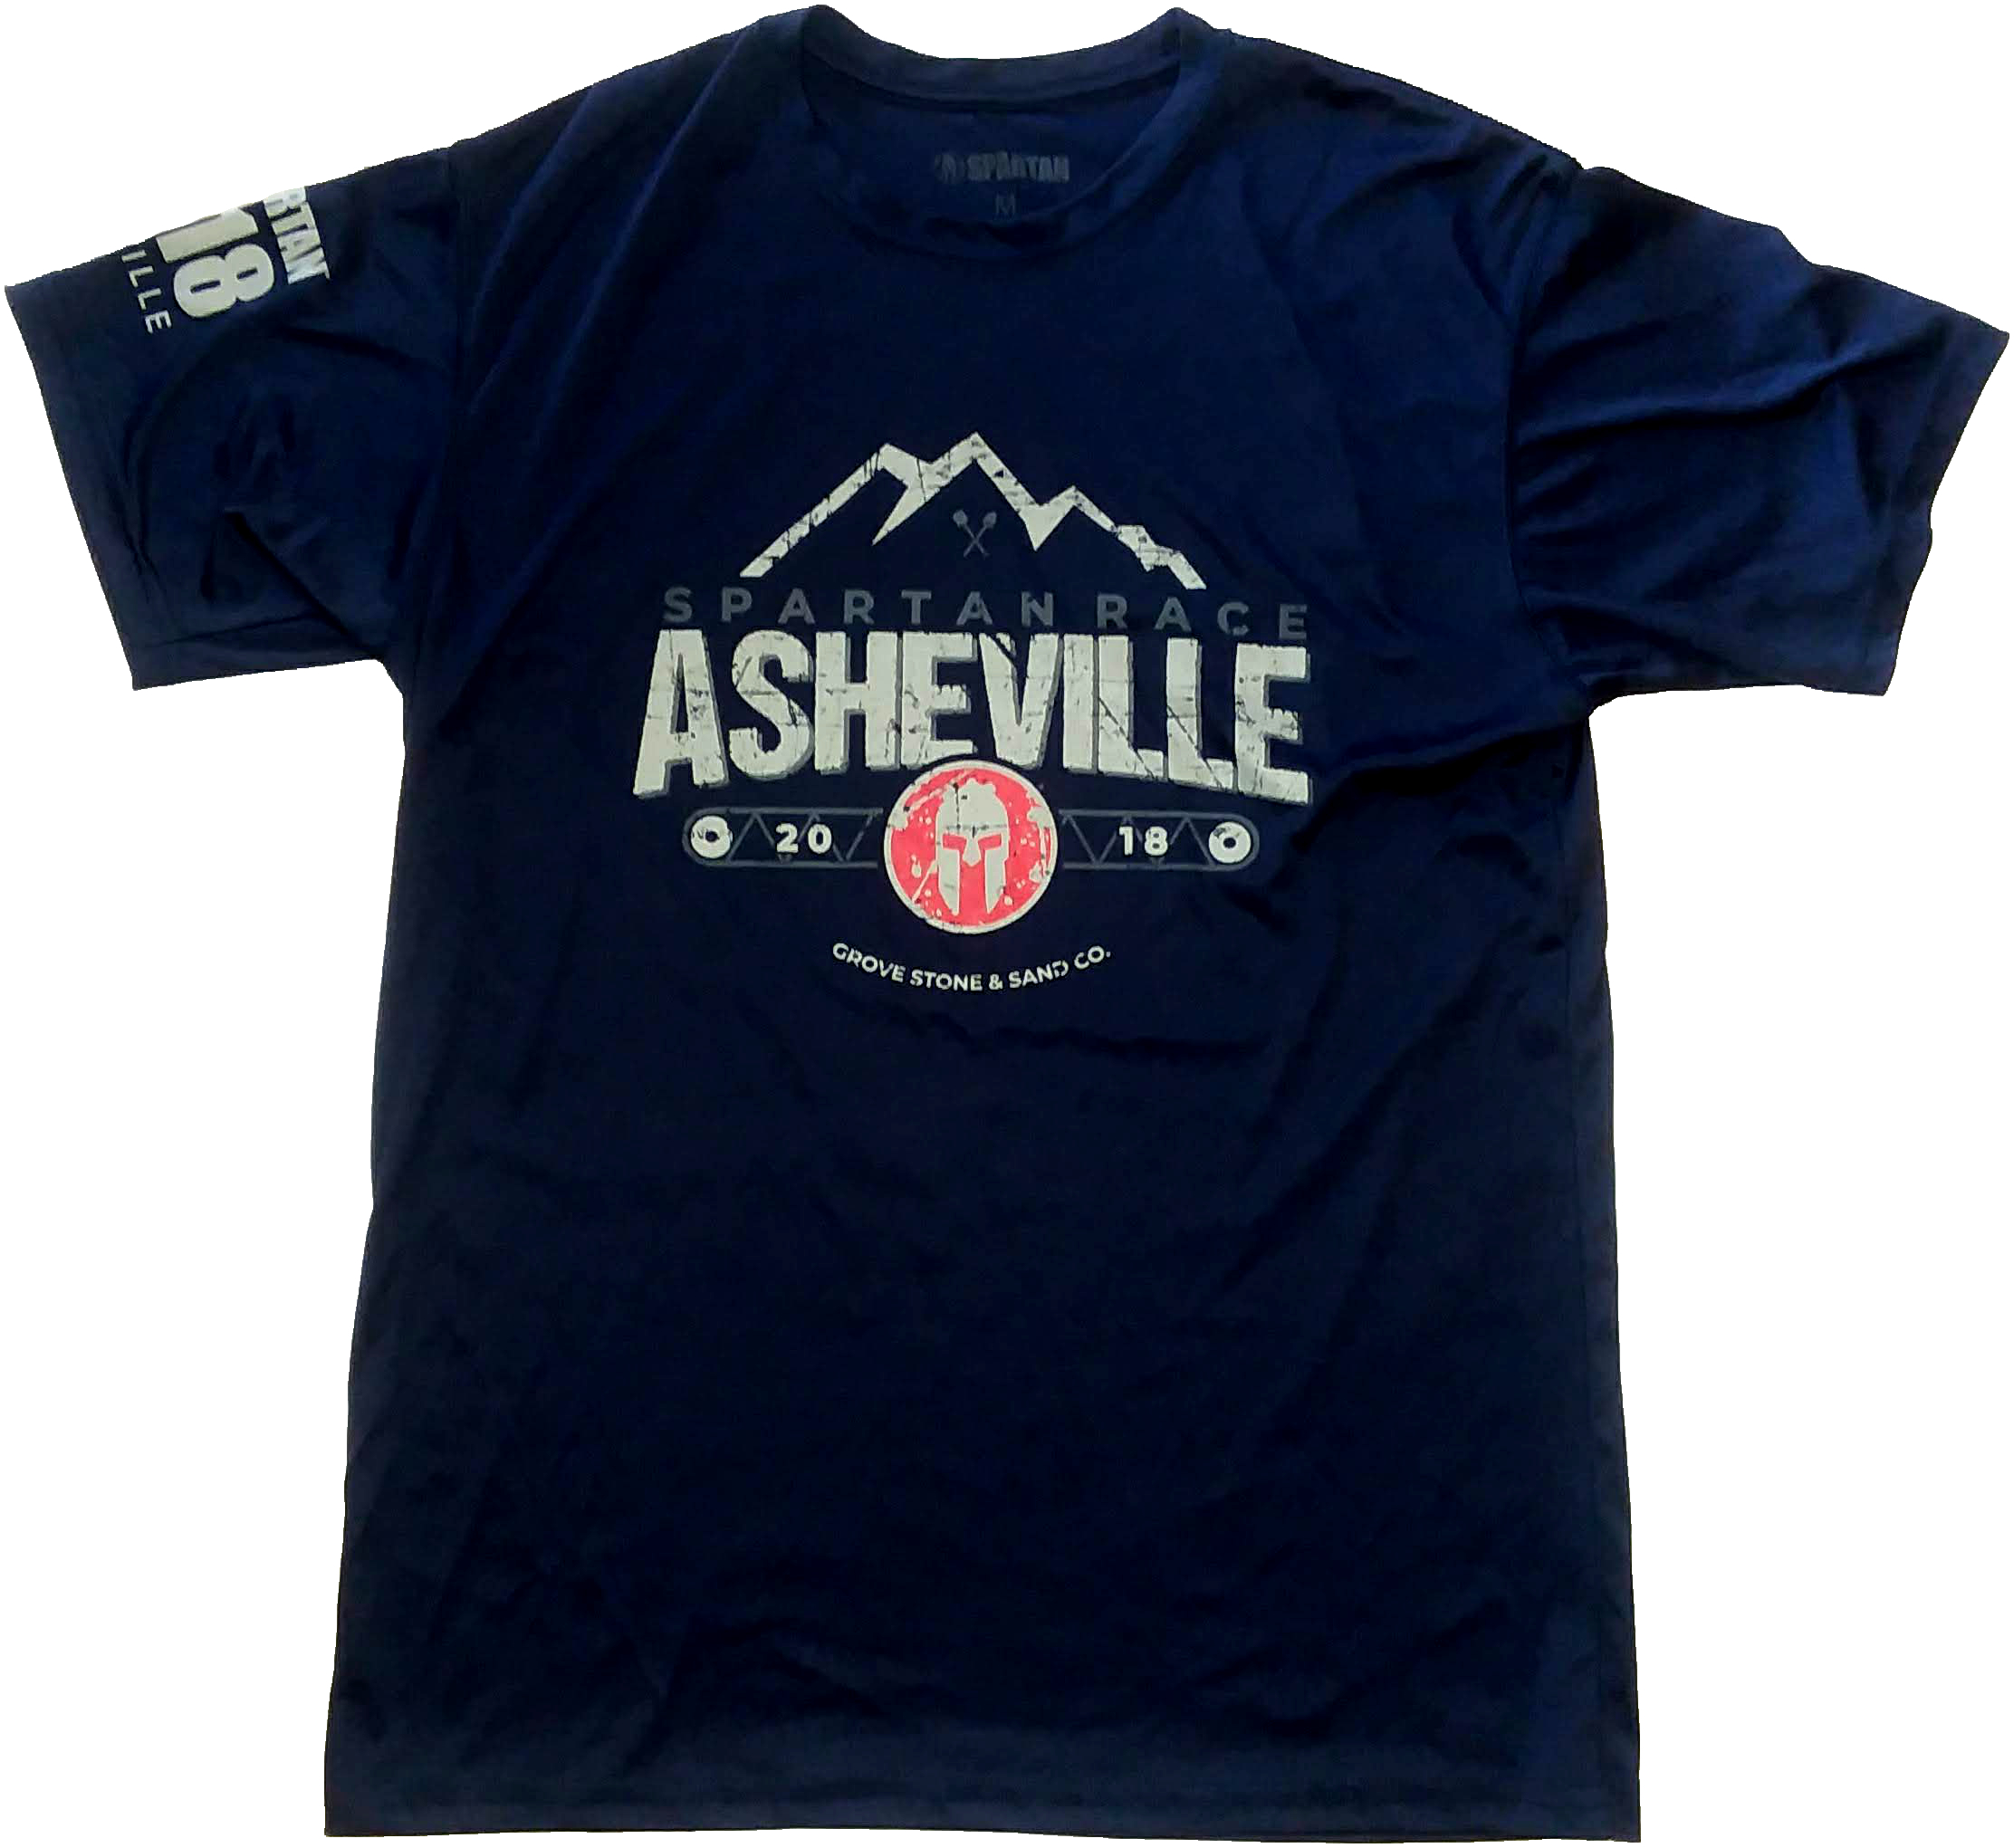 Spartan_Super_Shirt_Venue_2018_Asheville_Front_v01